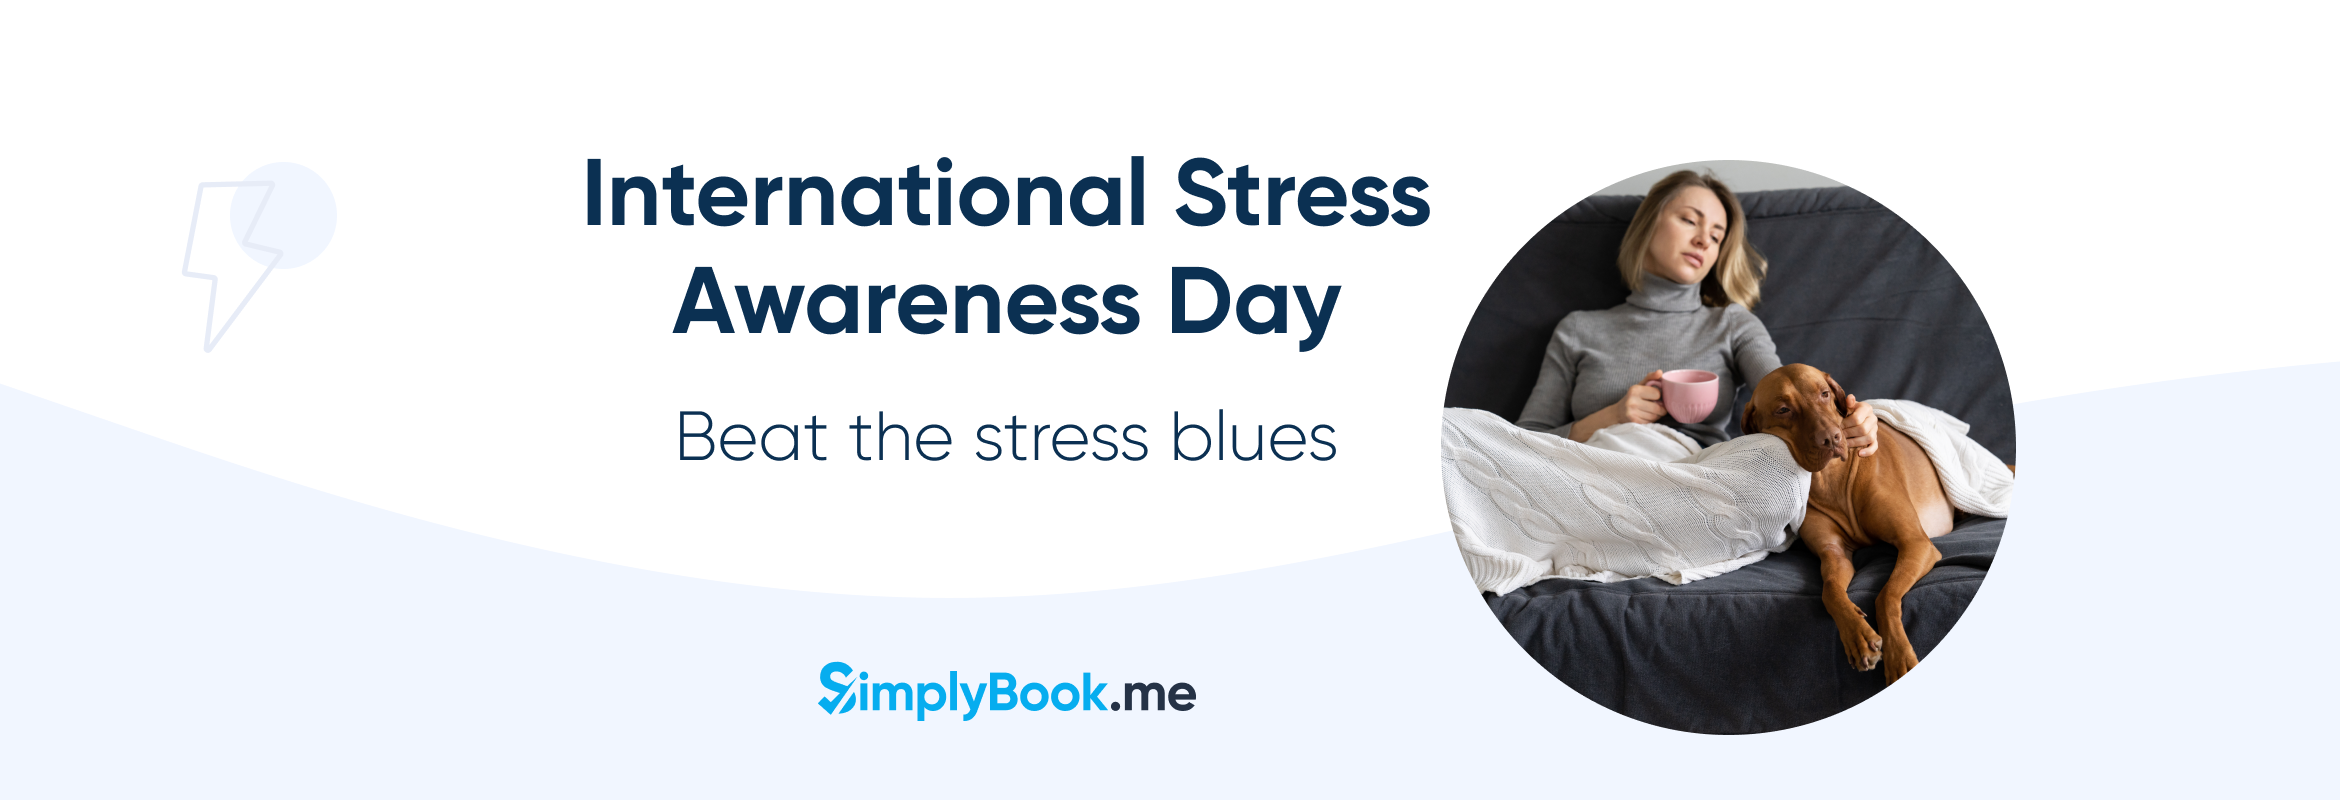 stress awareness day